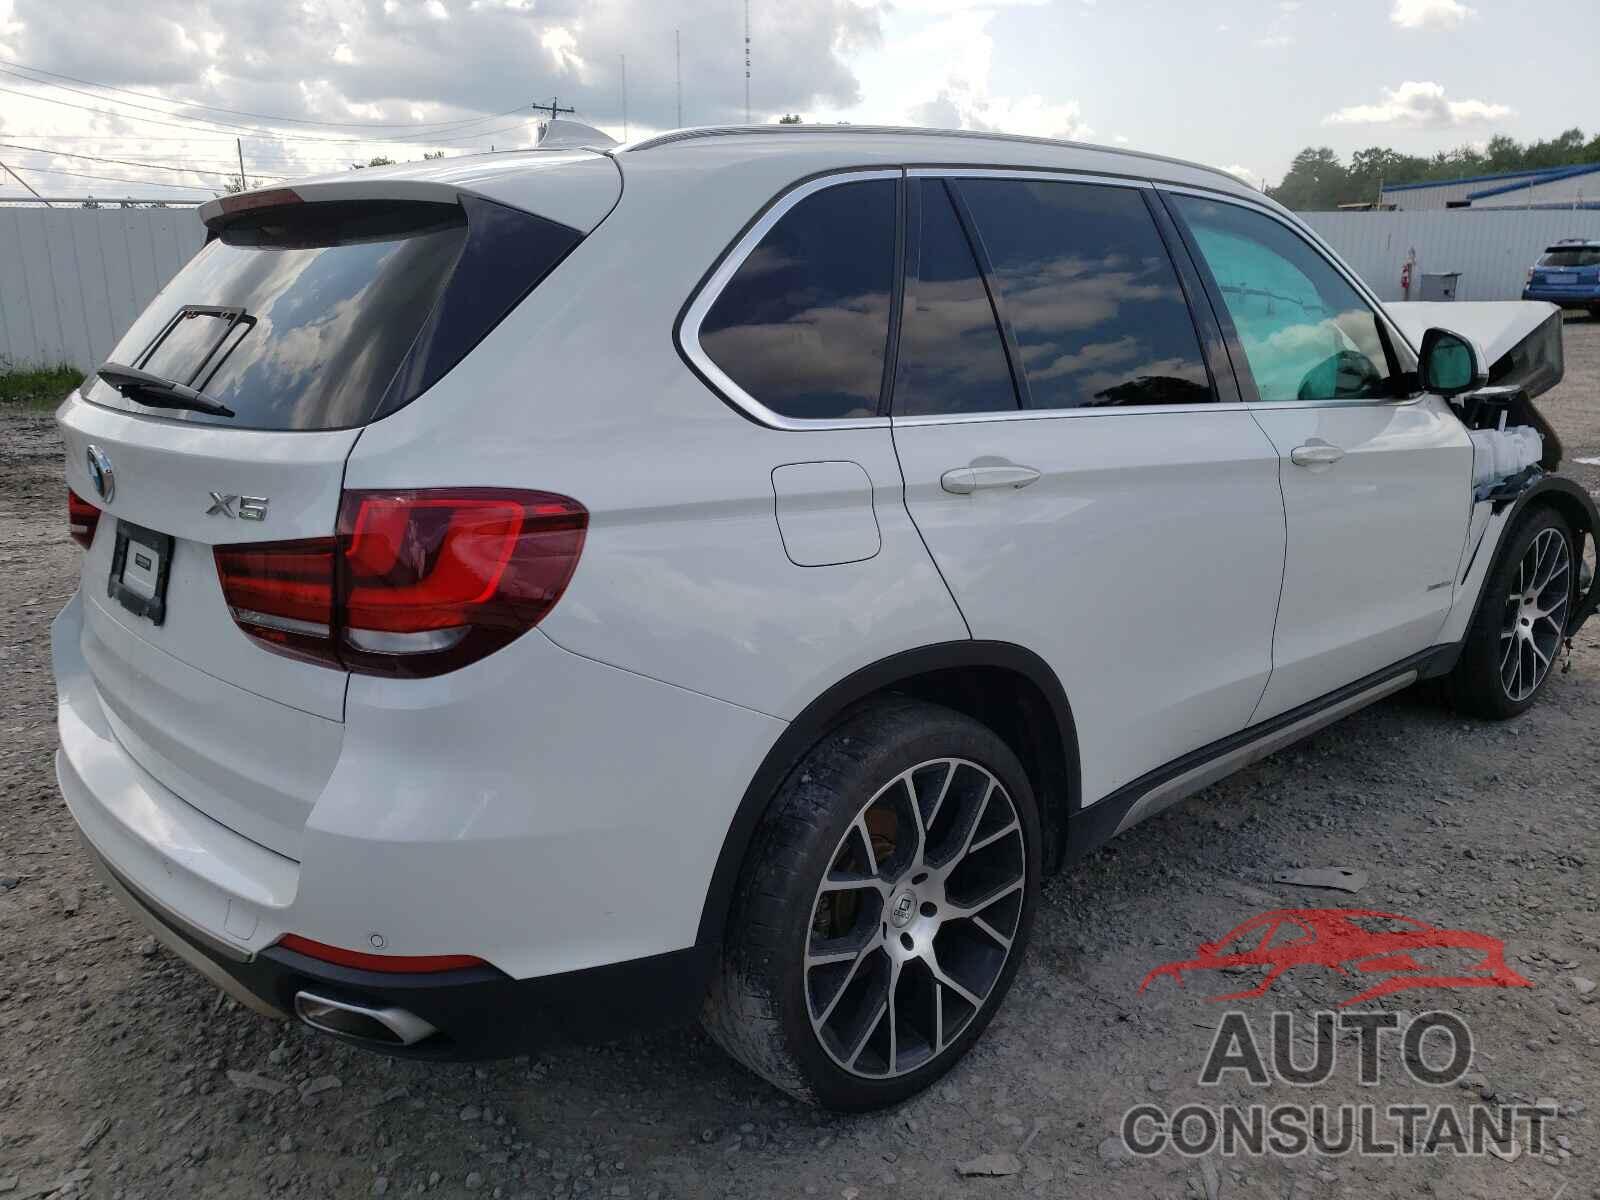 BMW X5 2018 - 5UXKS4C50J0Y20807